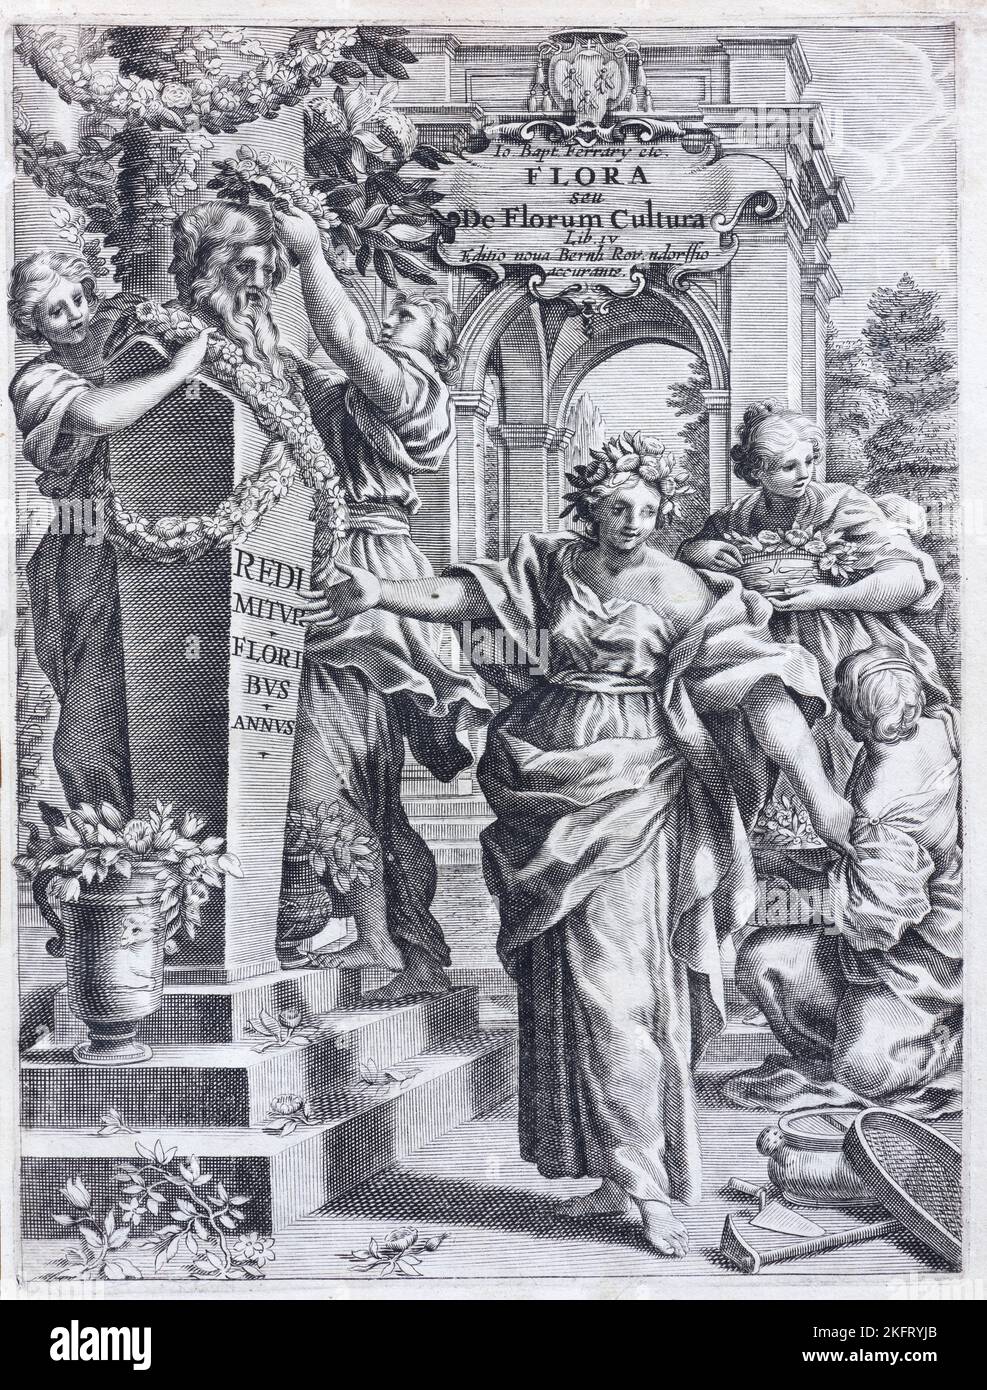 Goddess Flora, copperplate engraving, frontispiece, from Flora over Culture di fiori by Giovanni Battista Ferrari, Rome, 1638 Stock Photo